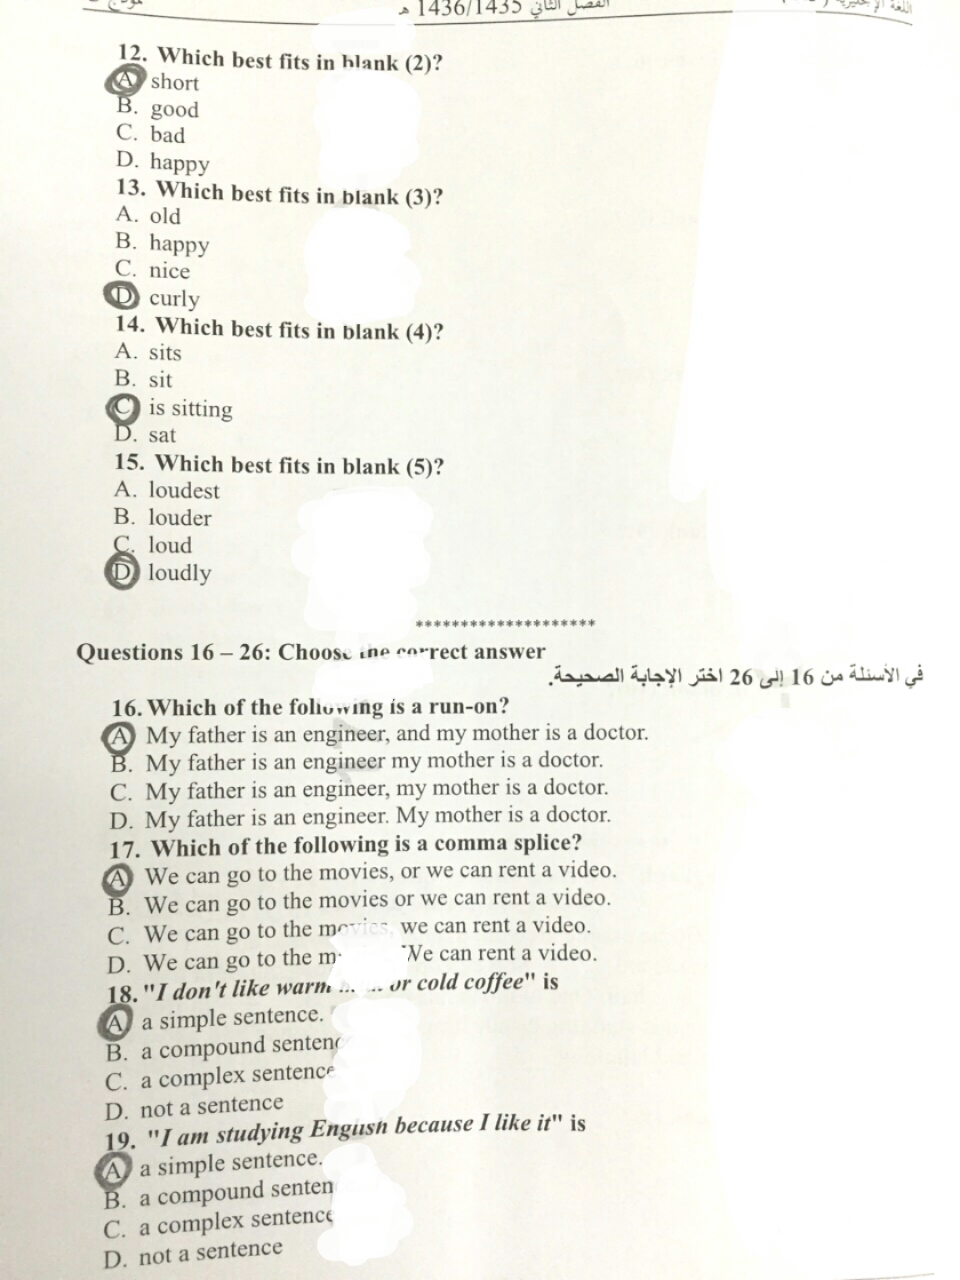 اسئلة اختبار اللغة الإنجليزية كتابة الفصل الدراسي الثاني 1436هـ نموذج (C)